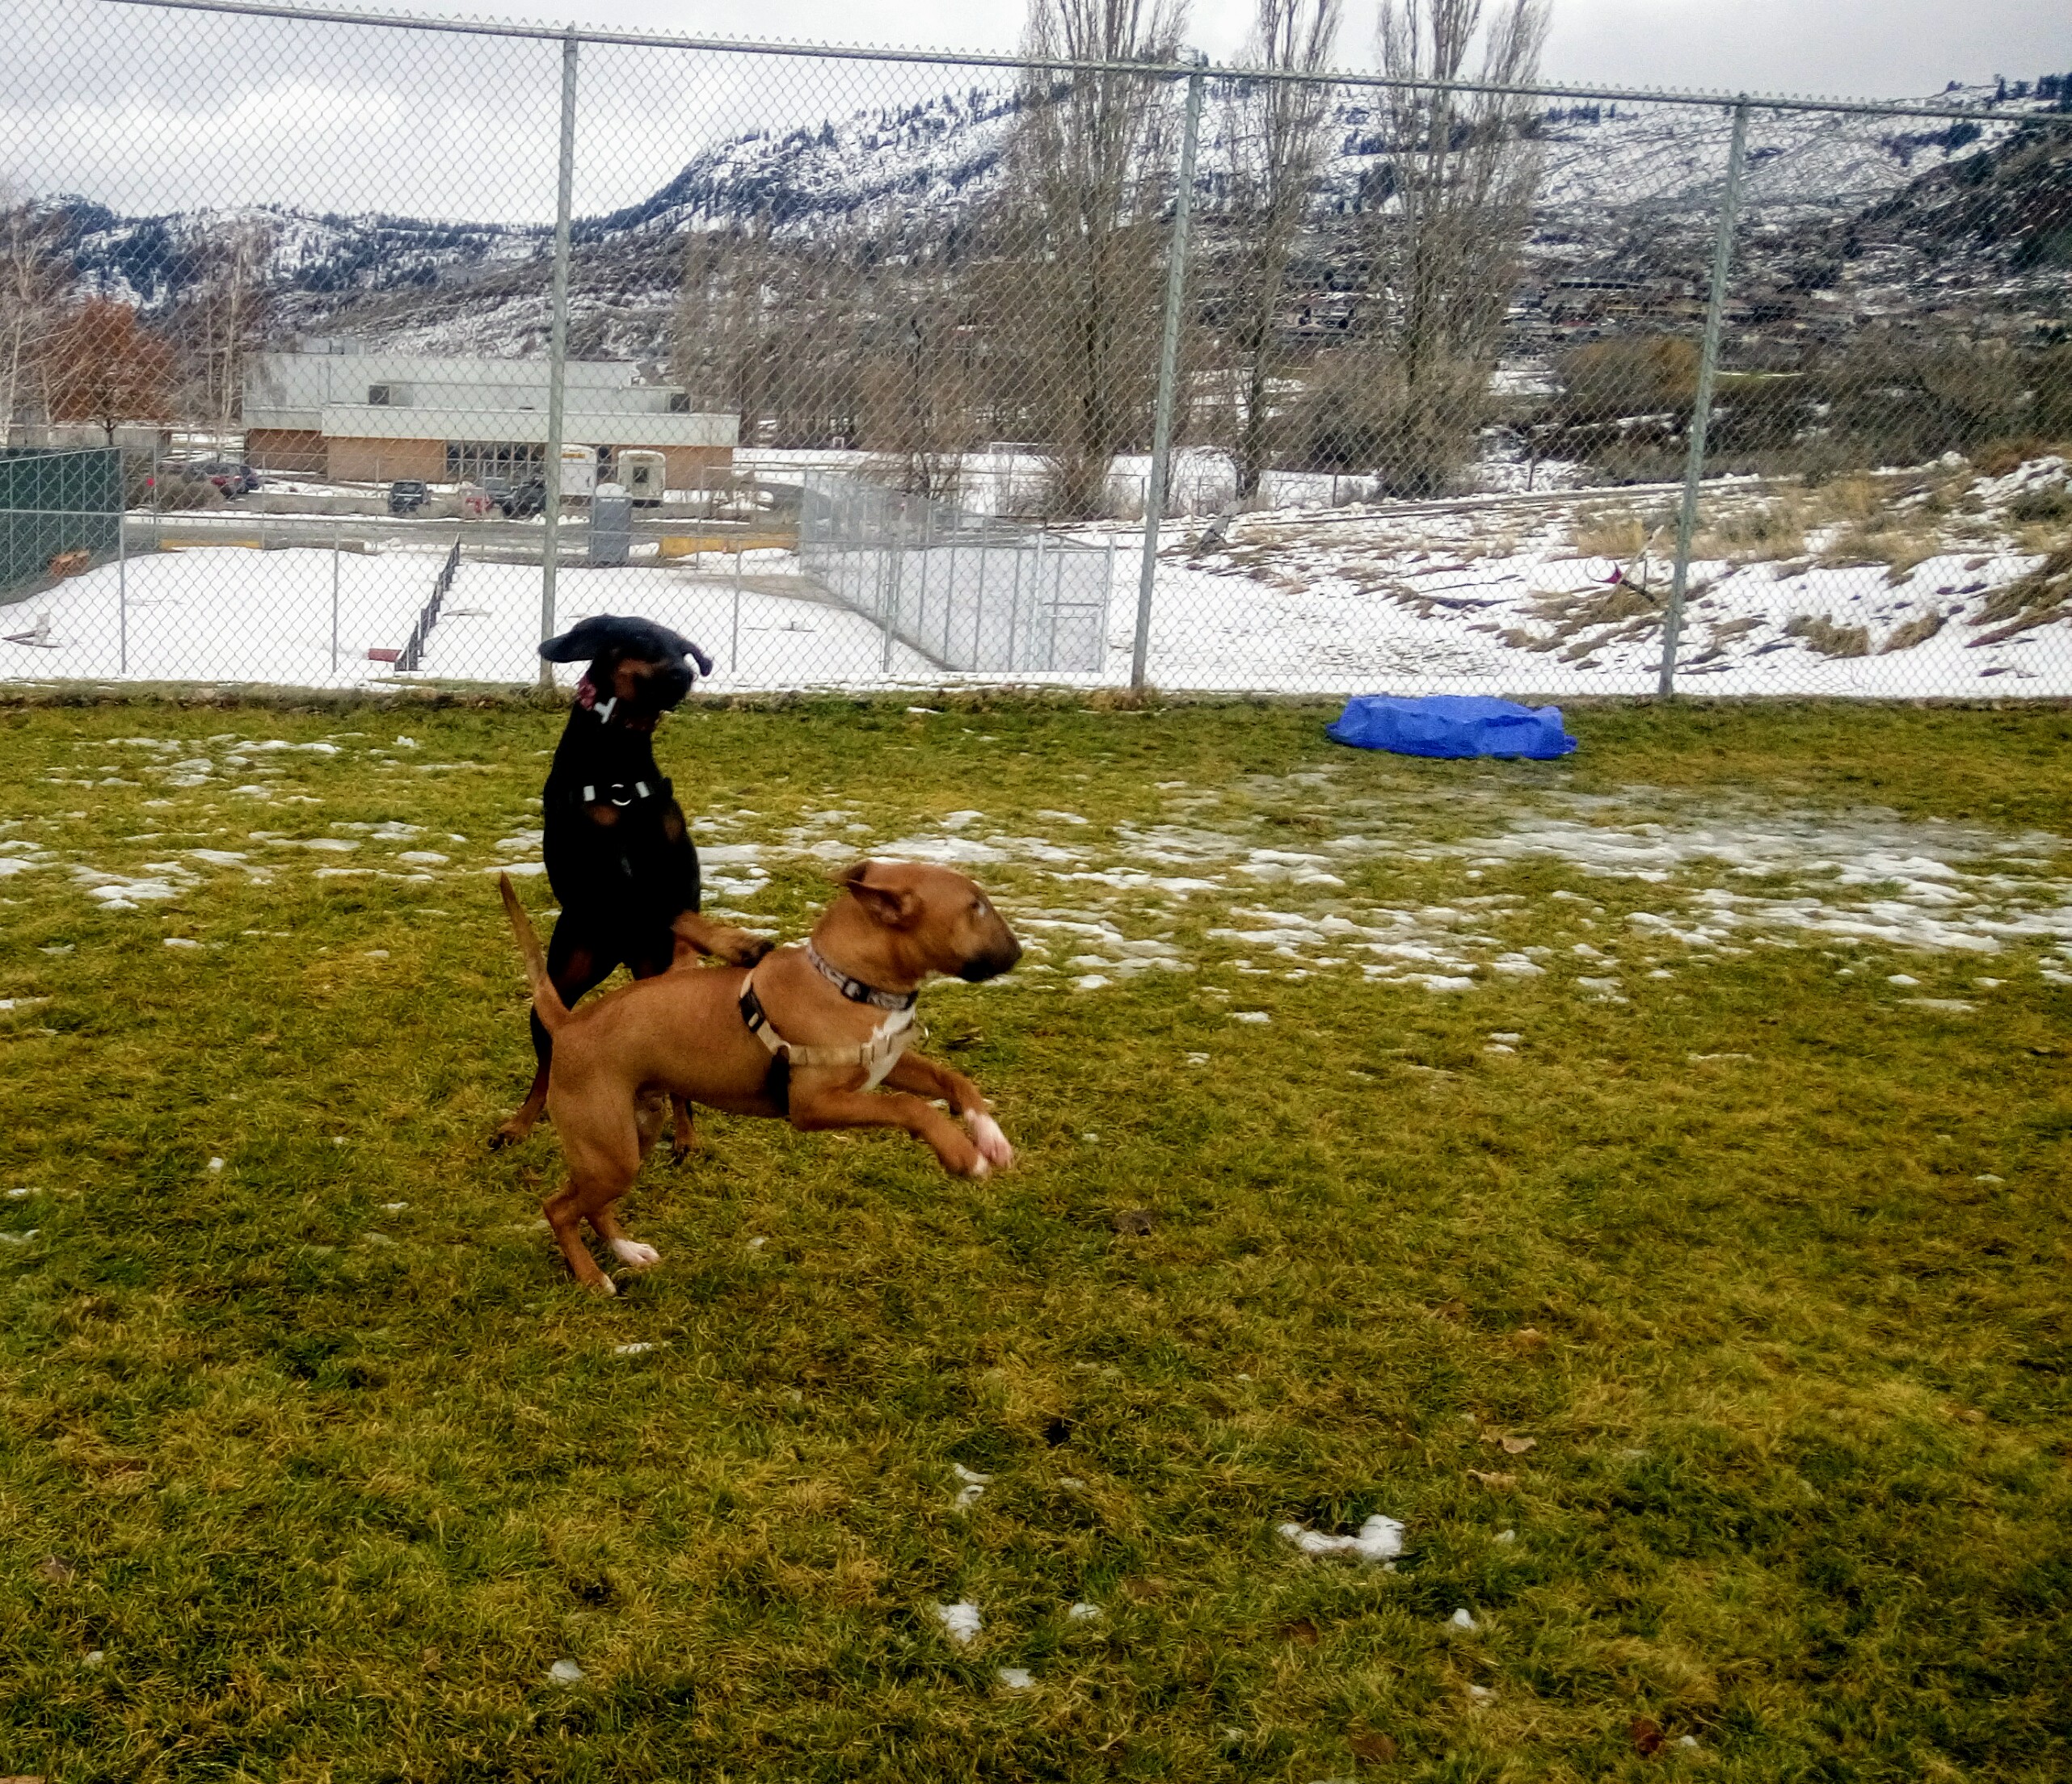 Doberman and Bull terrier at dog park, Osoyoos BC